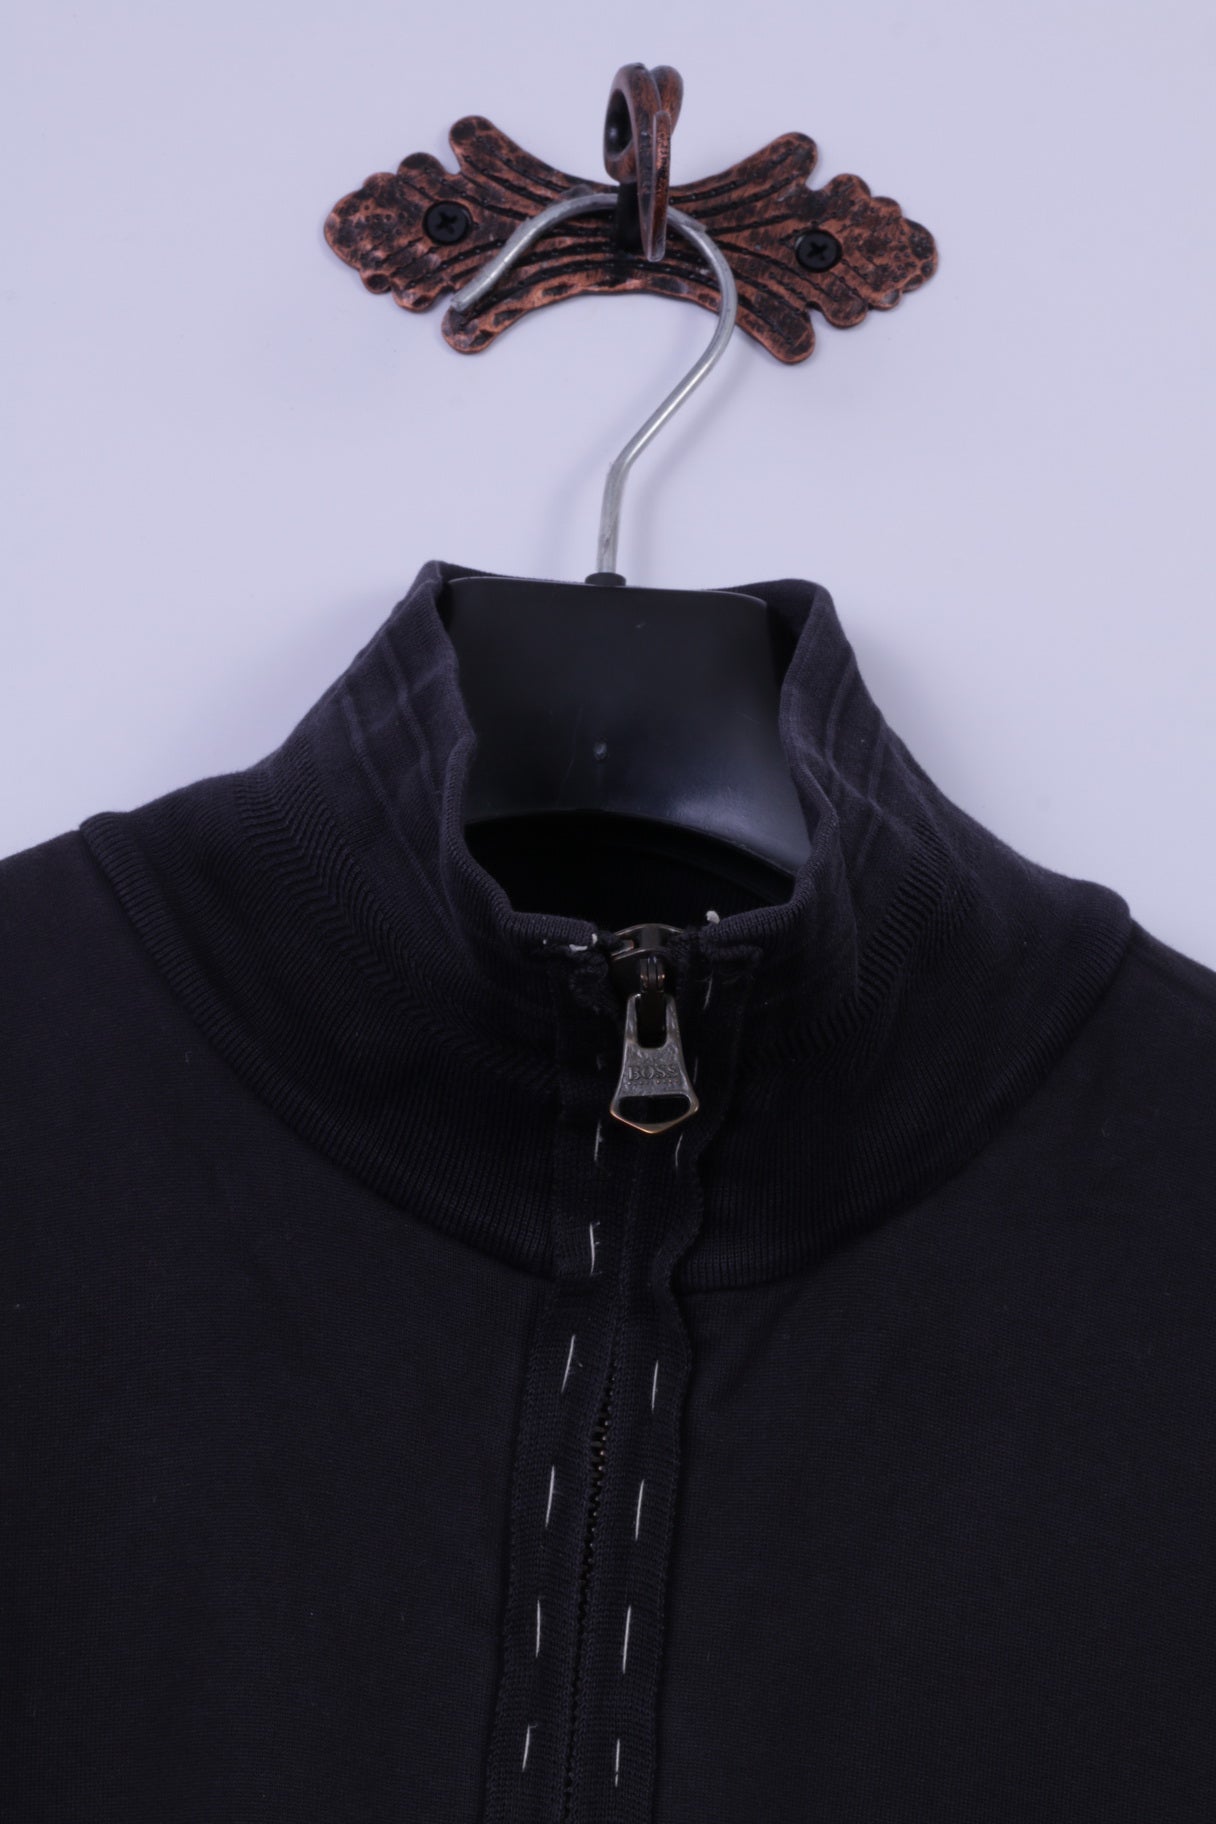 Hugo Boss Hommes M Sweatshirt Noir 100% Coton Fermeture Éclair Complète Cousu Haut Détaillé